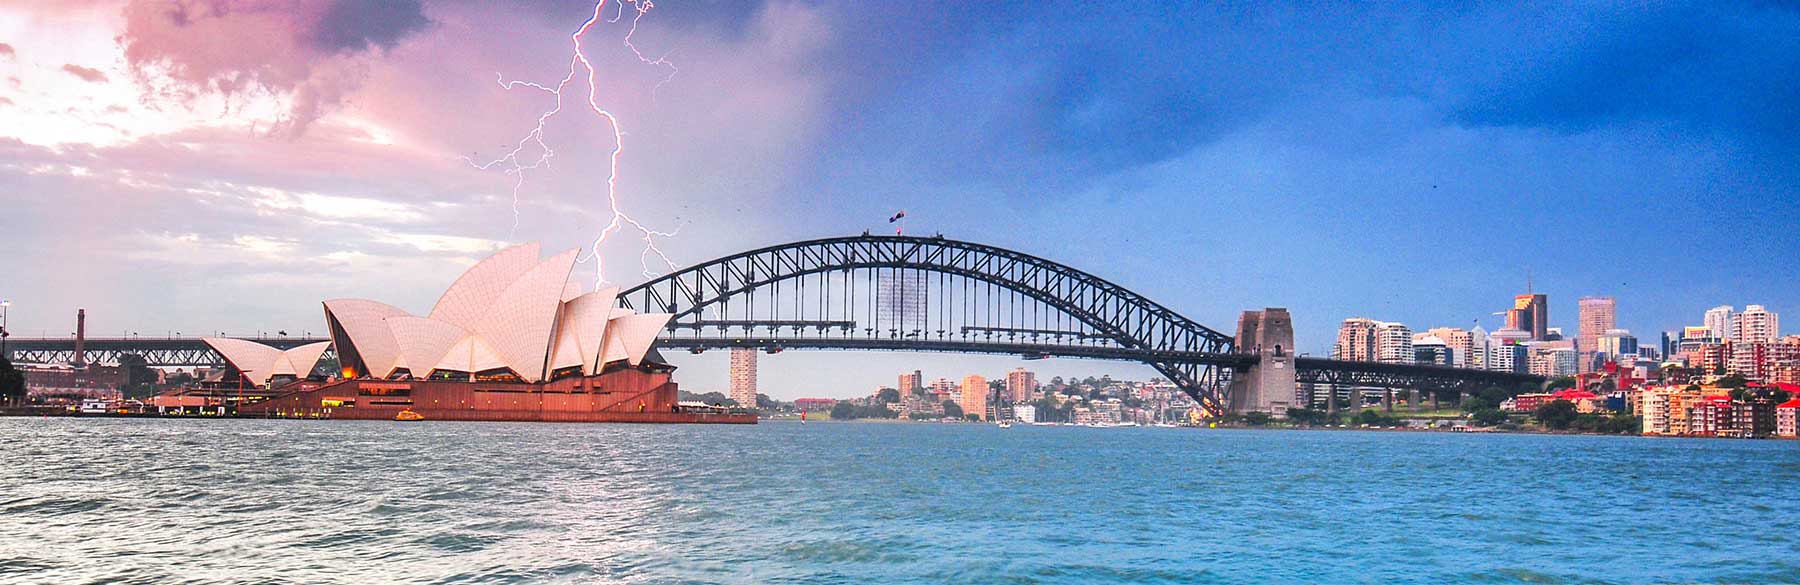 Australia Severe Thunderstorm header